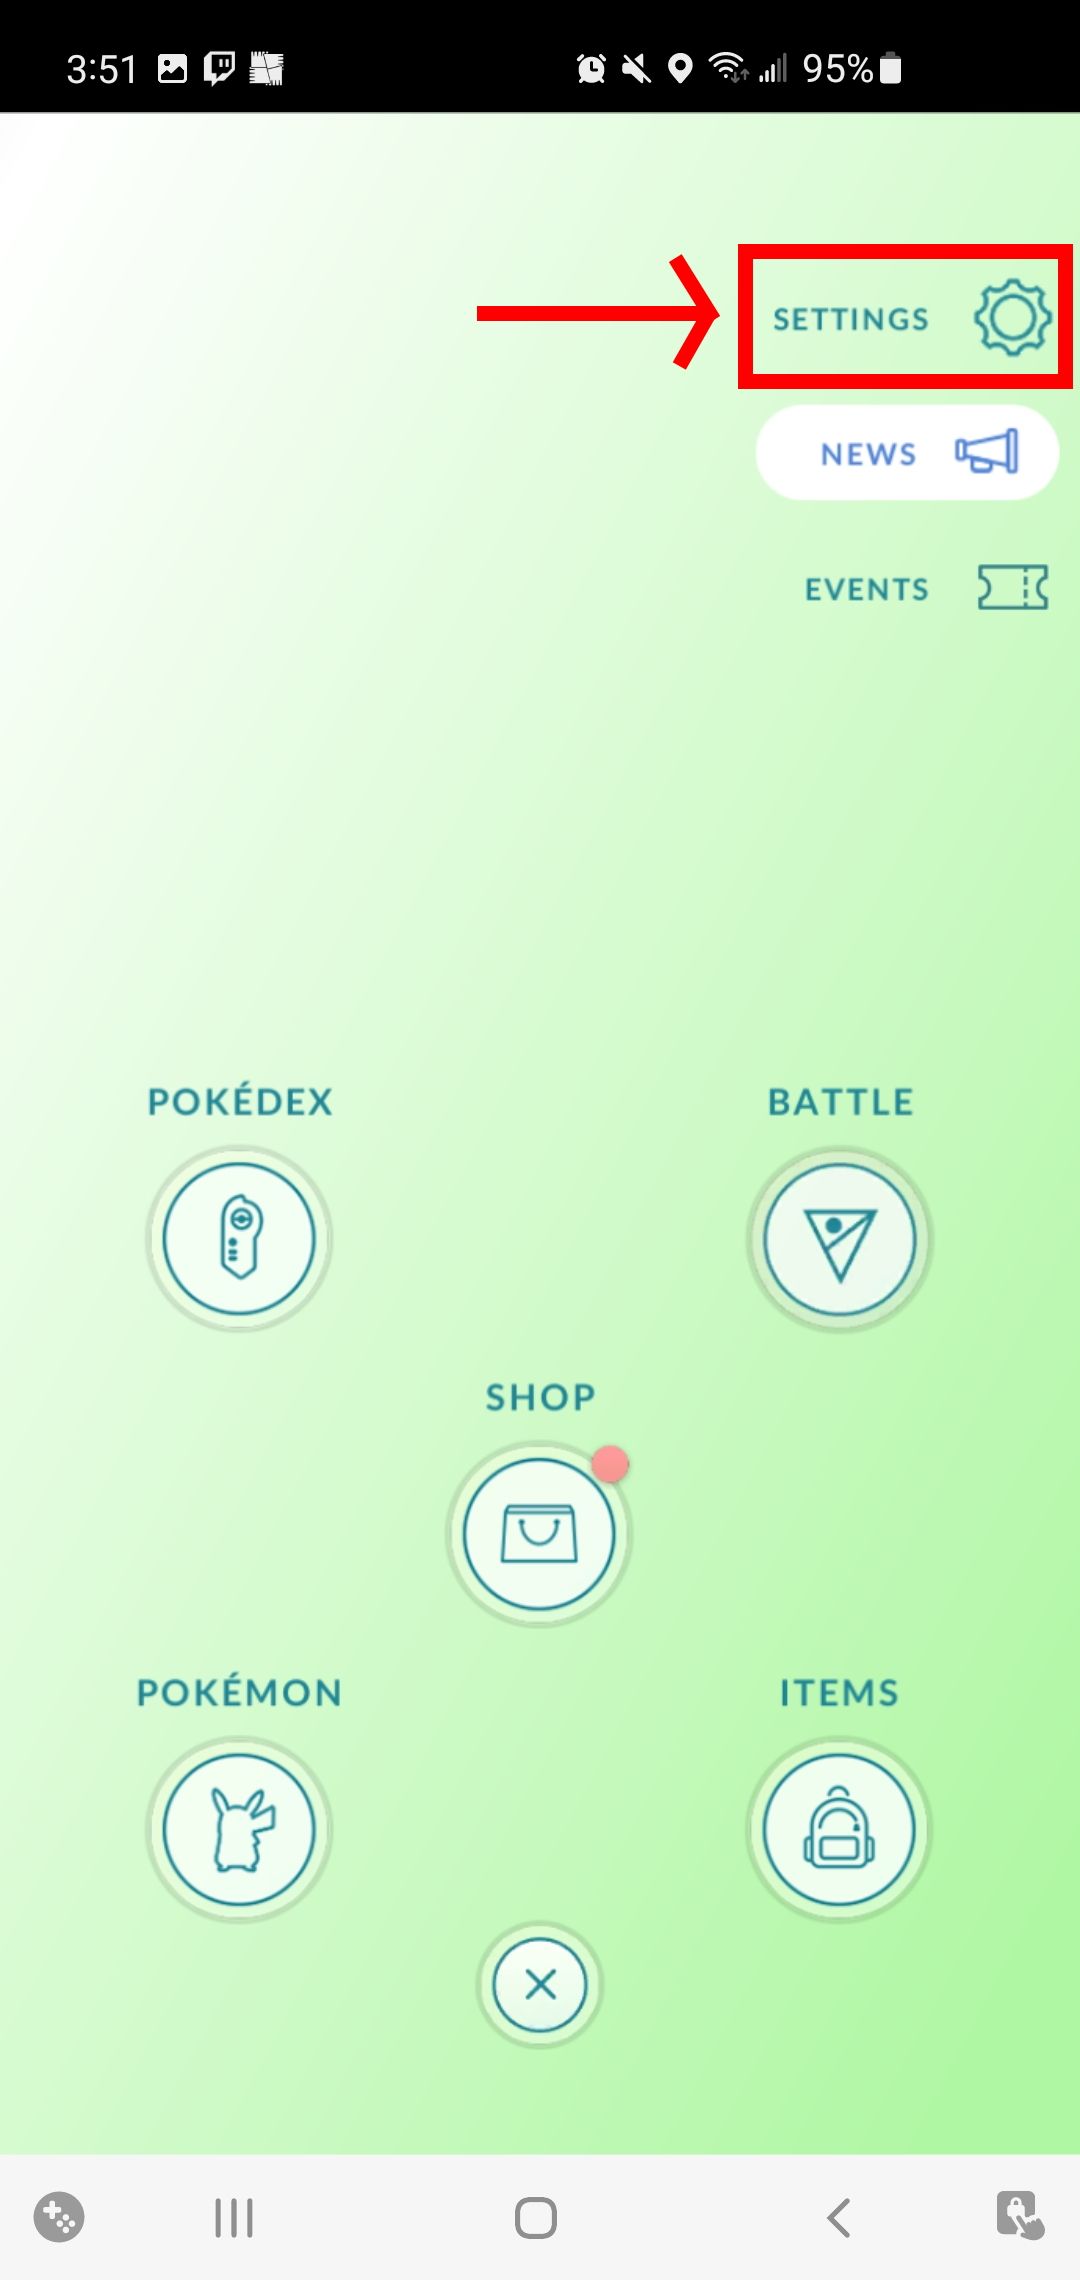 Pokémon GO_Settings